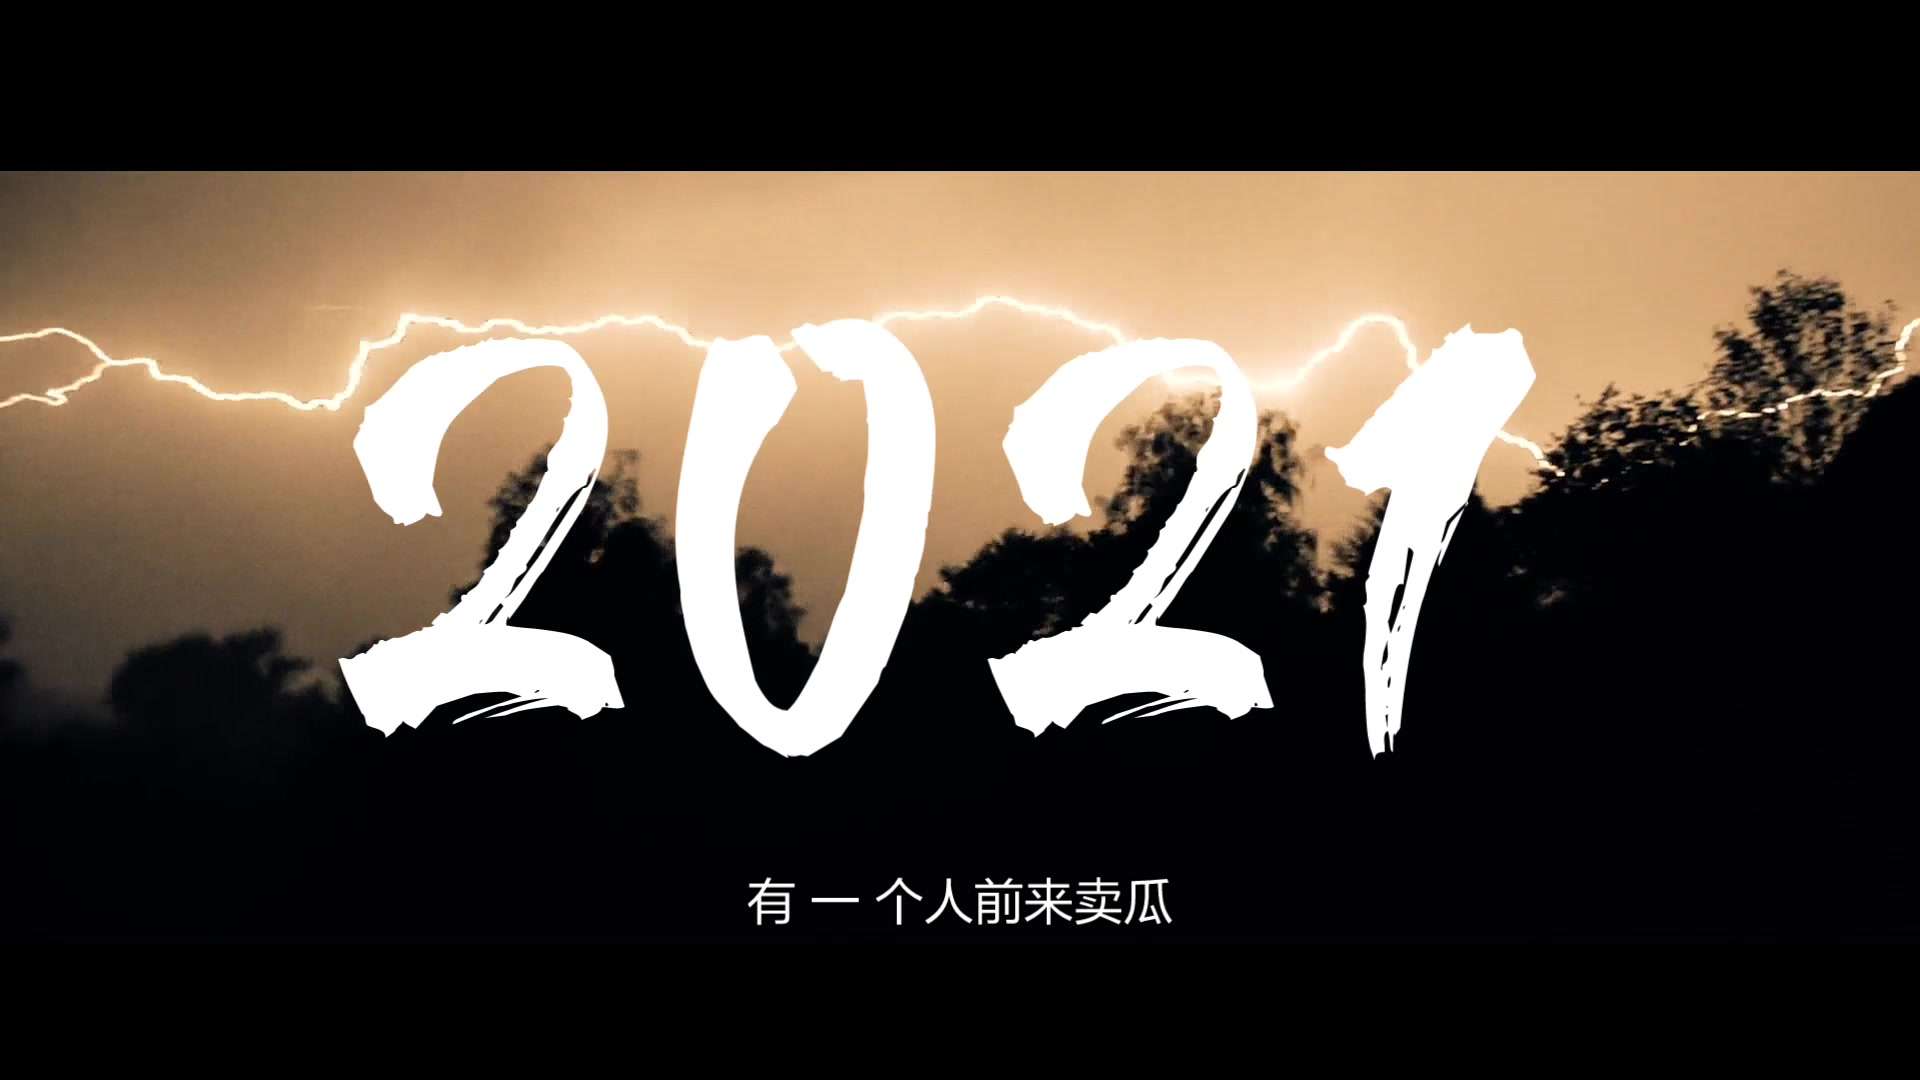 【2020-2021 年度混剪】平凡而梦幻般的一年